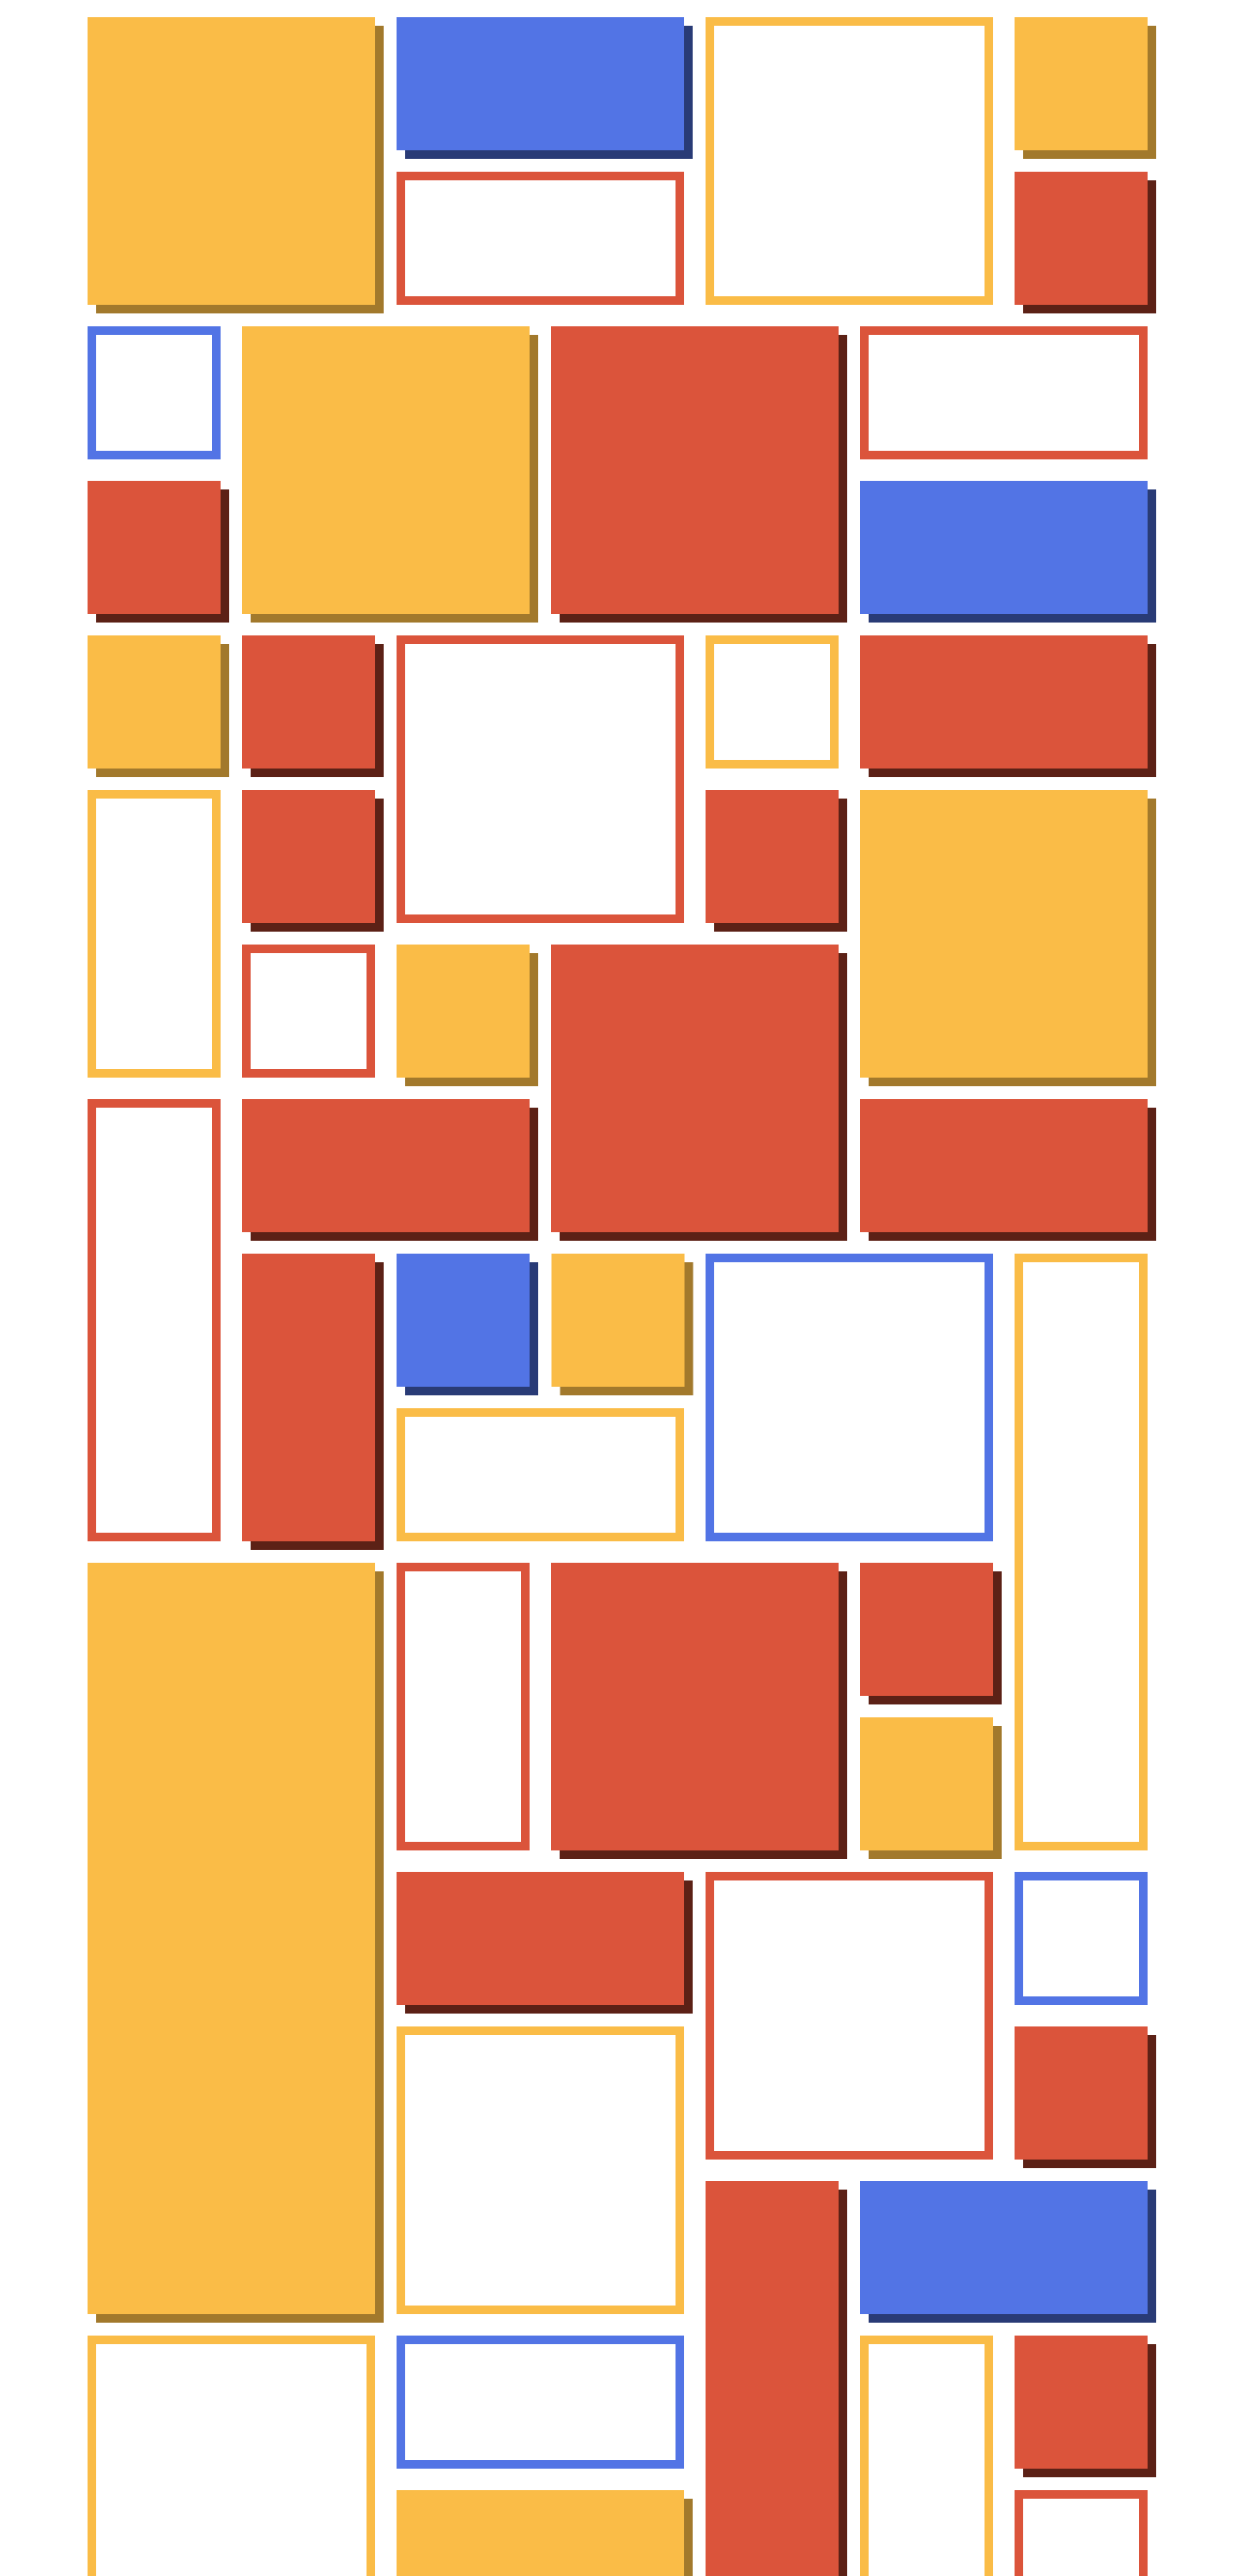 fourth grid layout